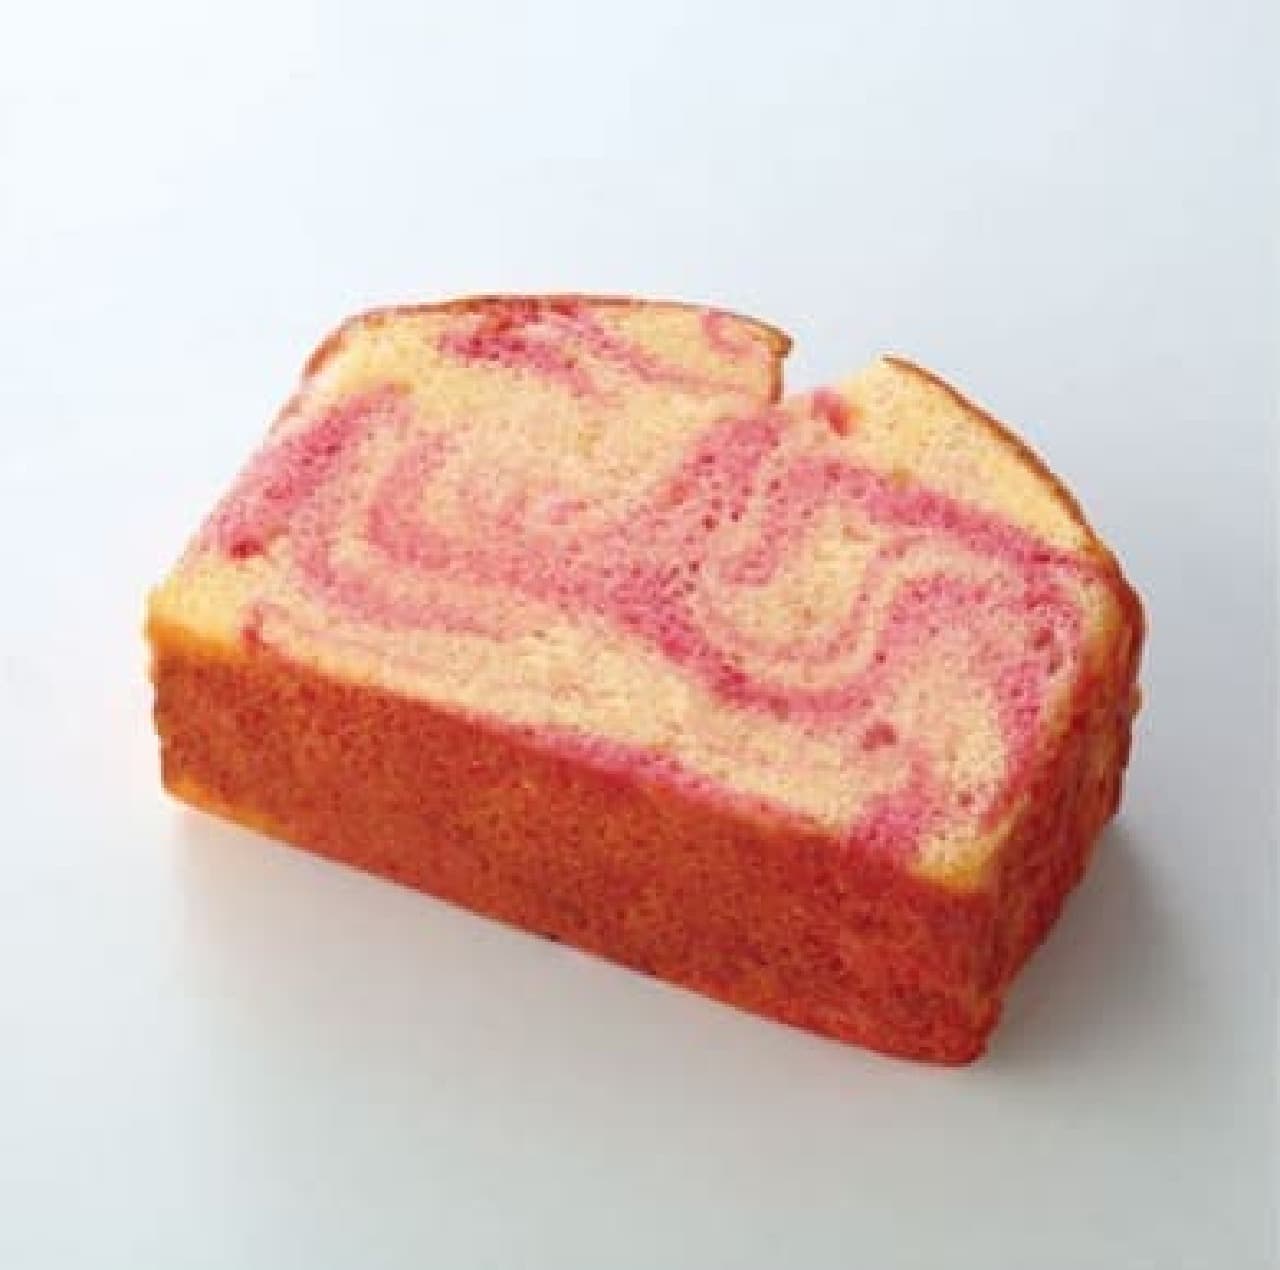 ファミリーマート“いちご”の焼き菓子